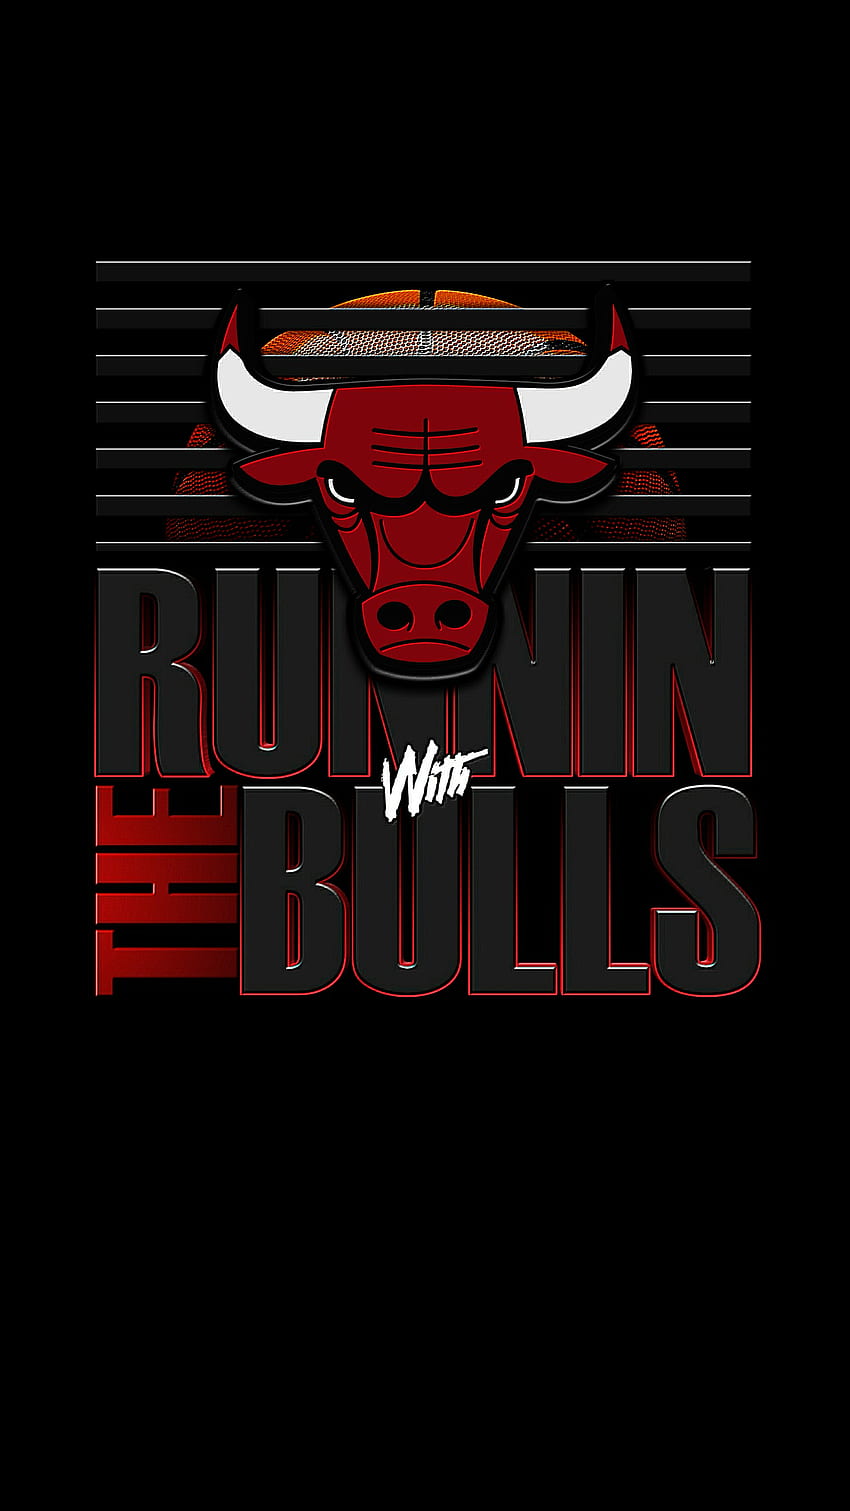 Chicago Bulls Wallpaper - iXpap